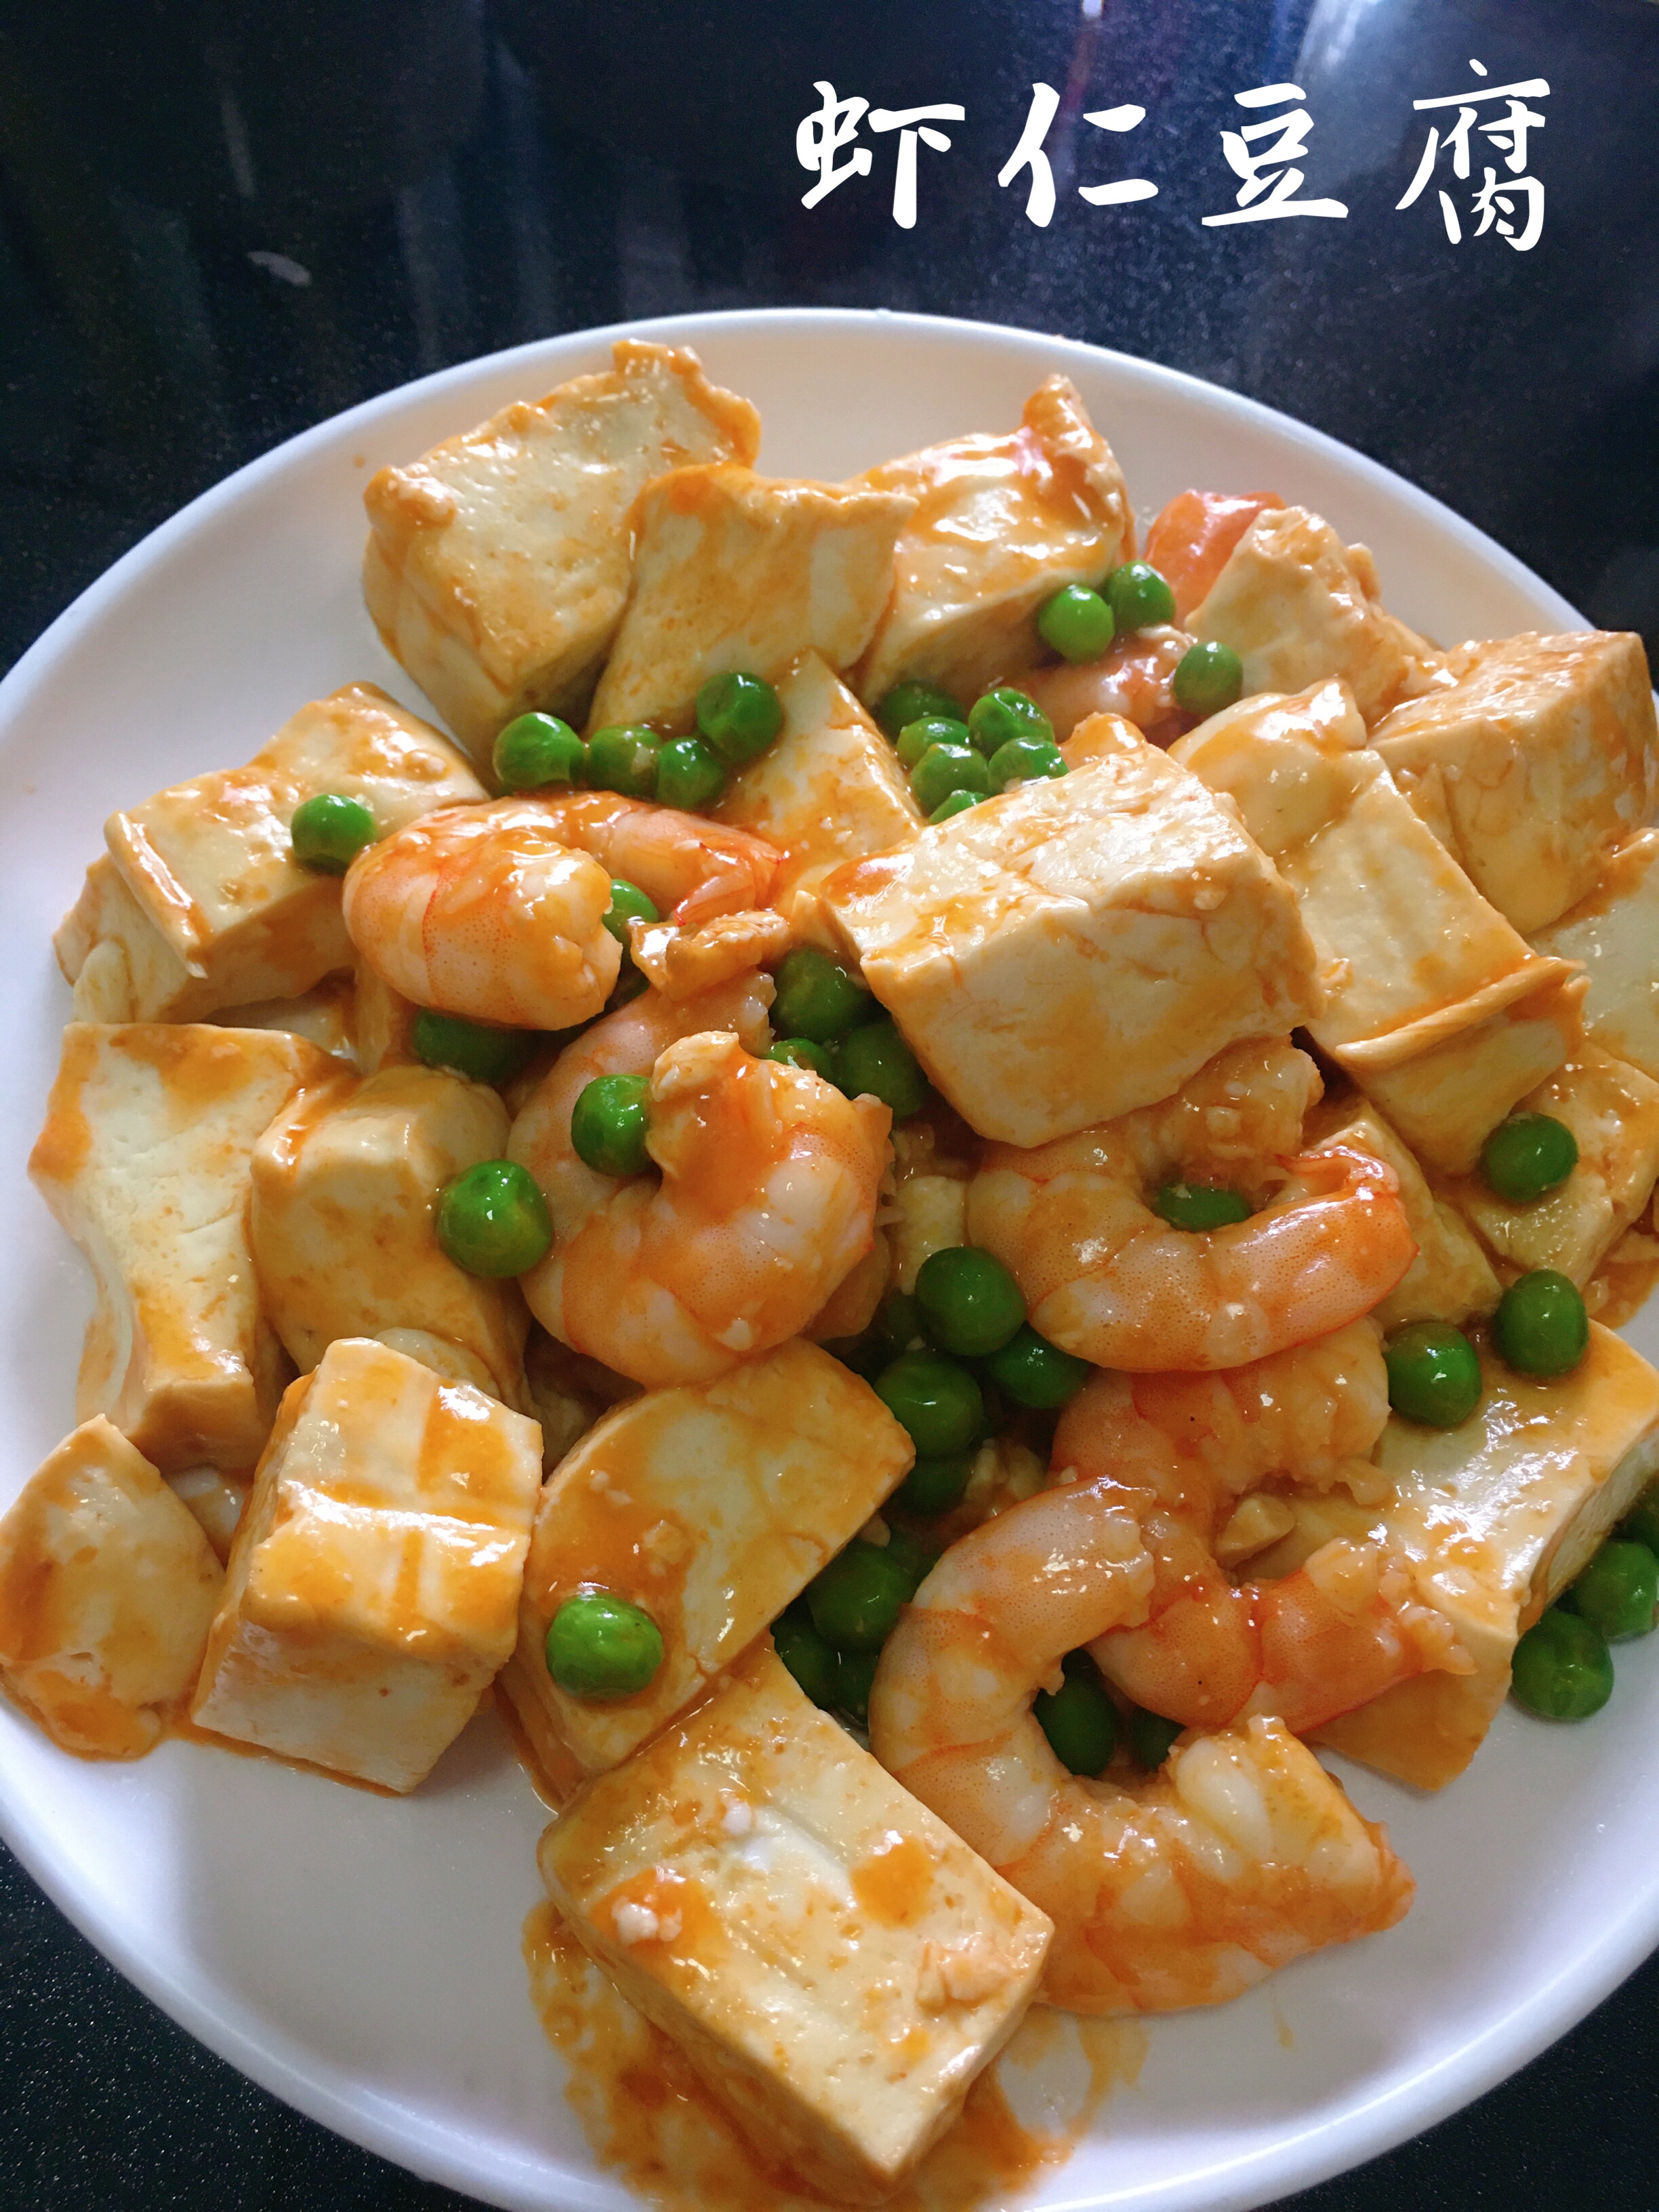 虾仁豆腐